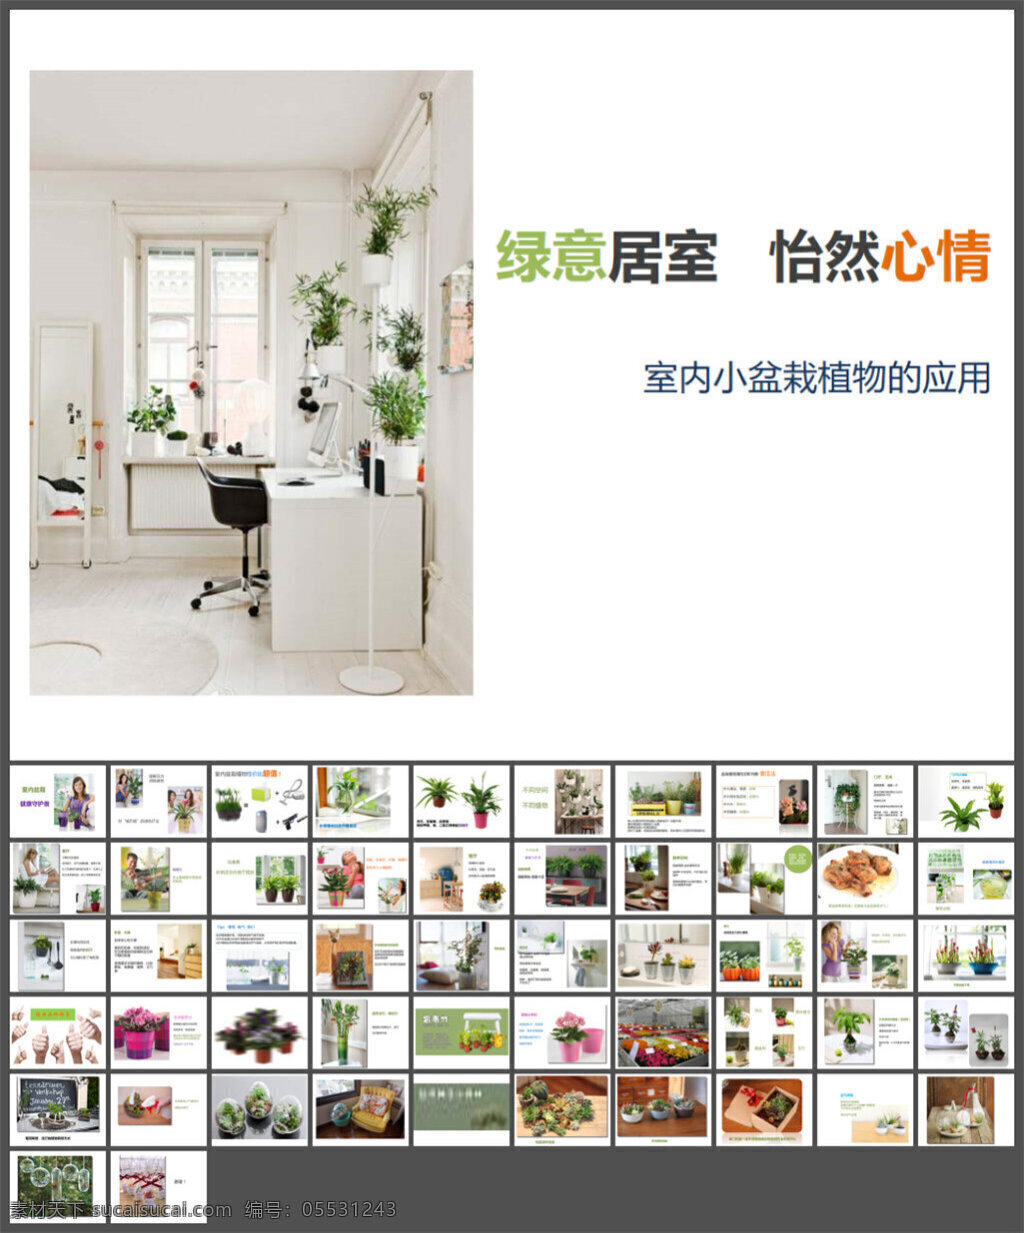 室内 盆栽 种植 模板 图表 制作 模版素材下载 pptx 白色 多媒体 企业 动态